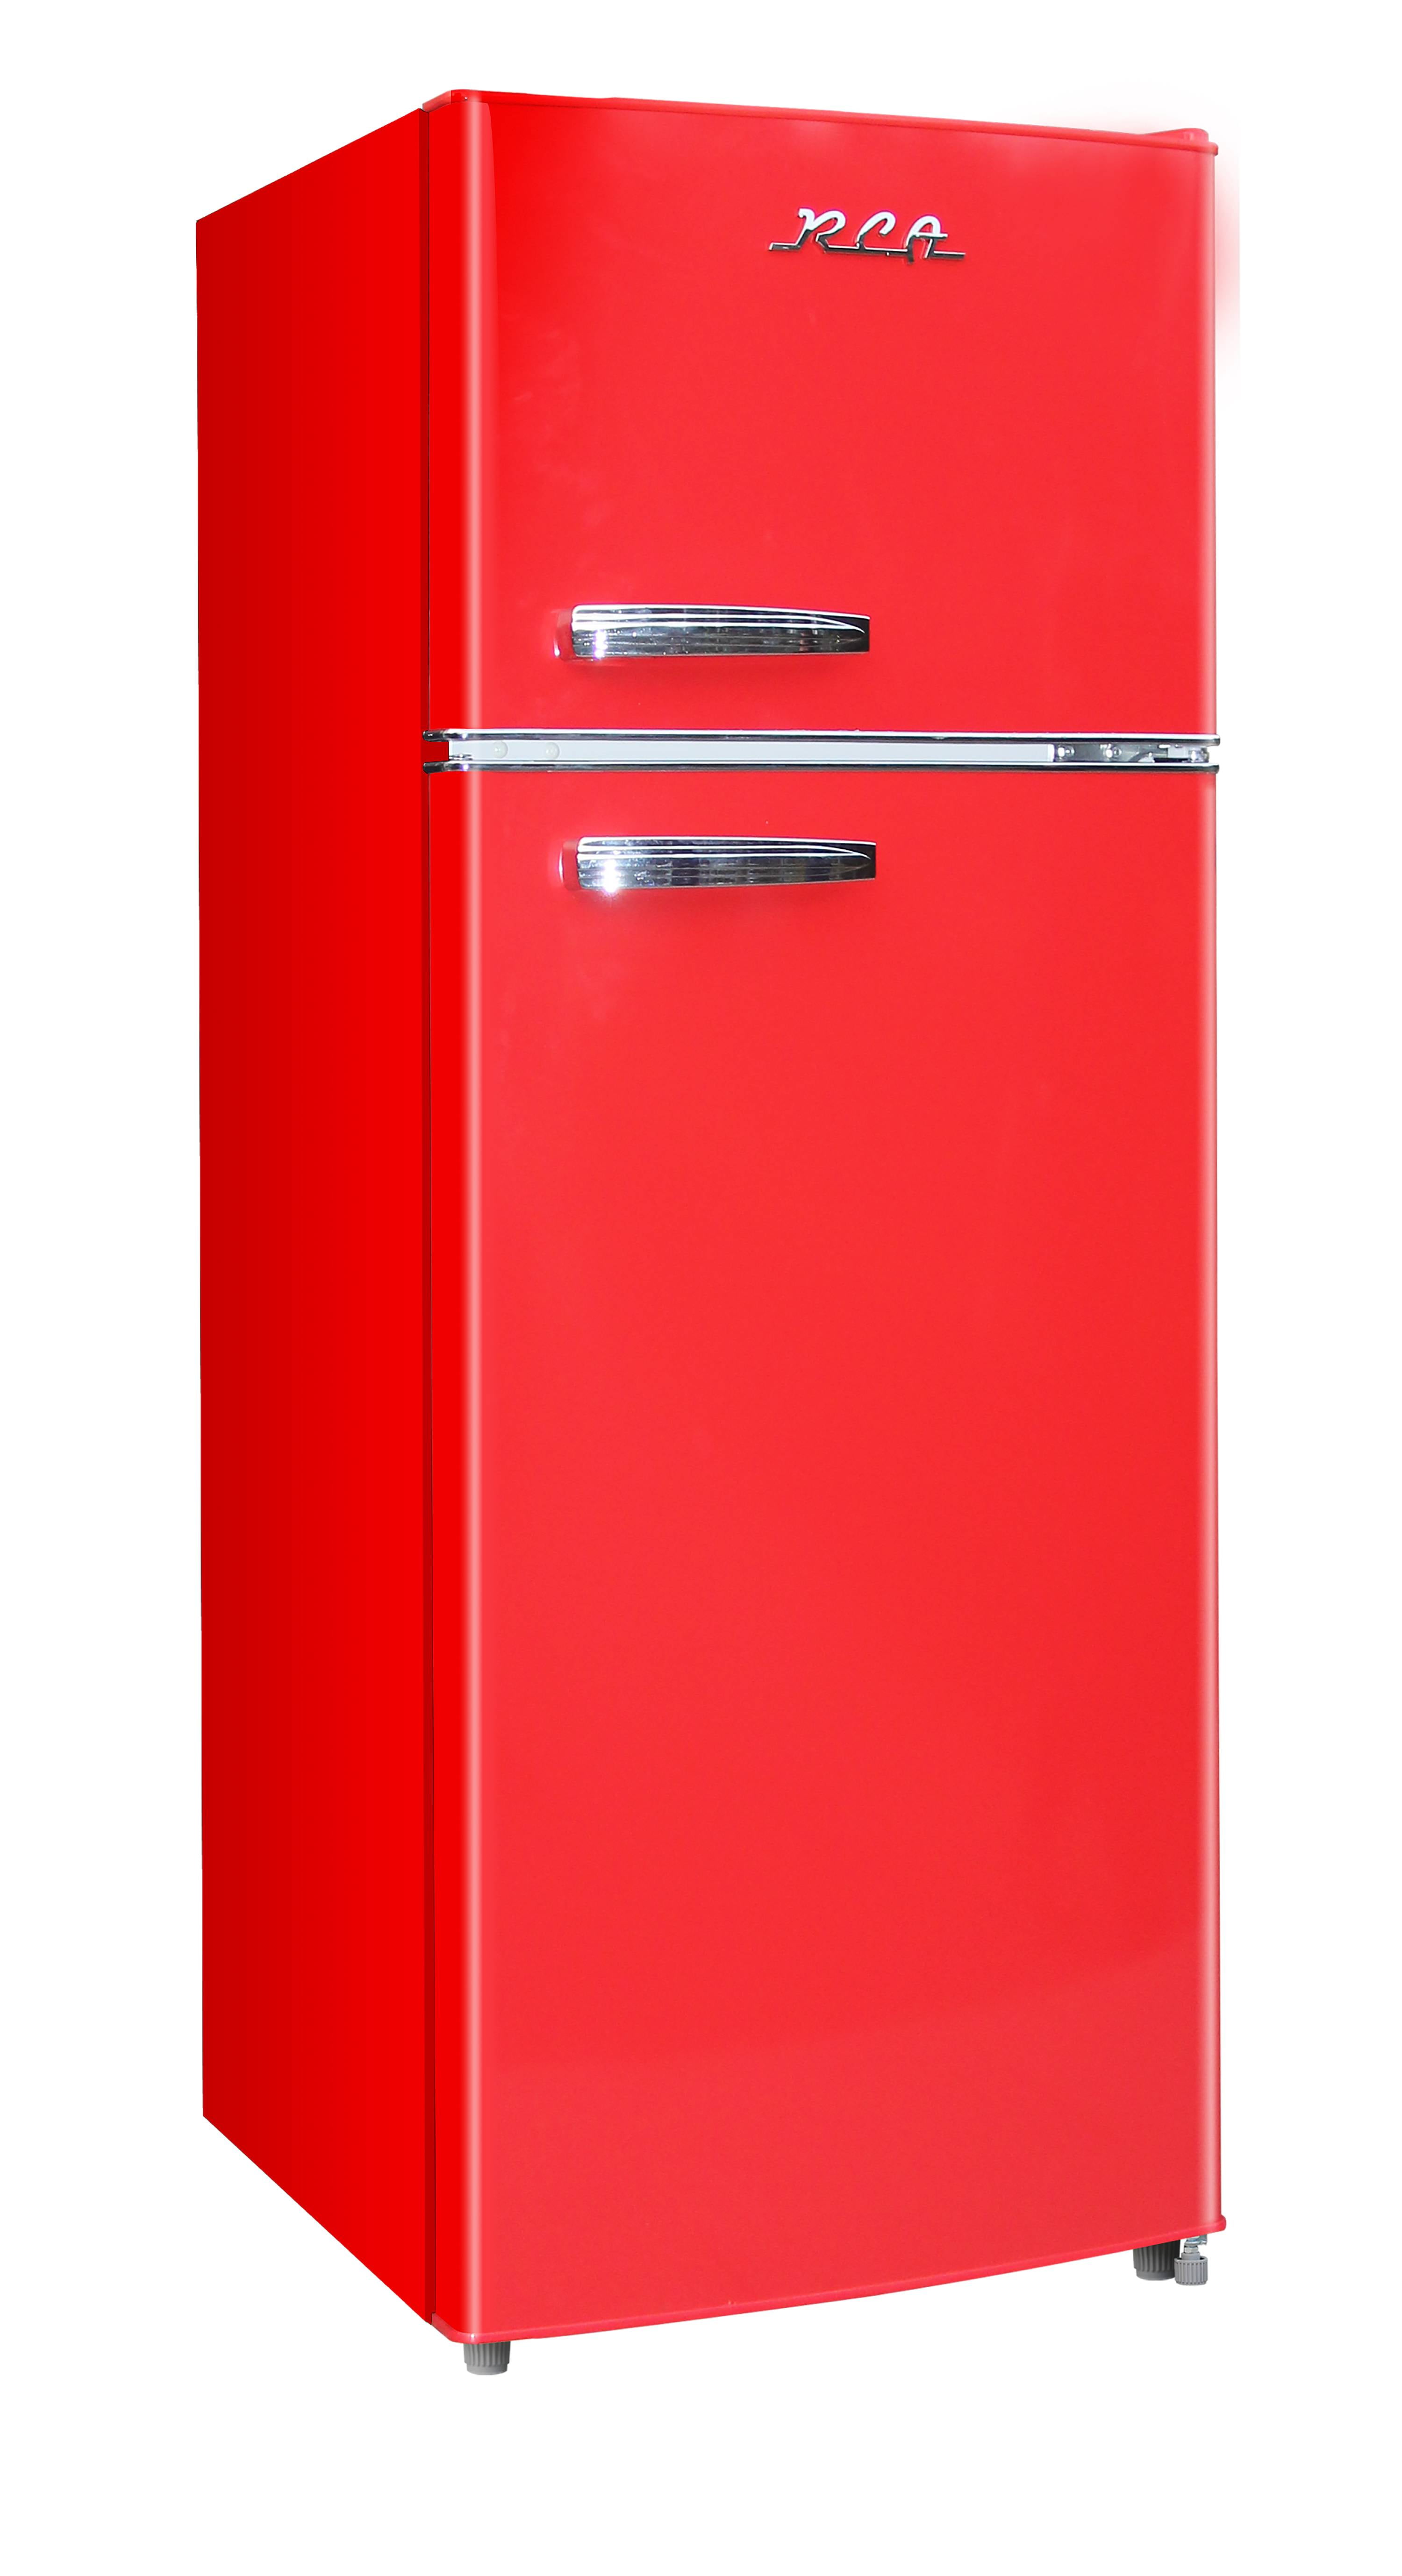 RCA 7.5 Cu. Ft. Retro Top Freezer Refrigerator RFR786, Black